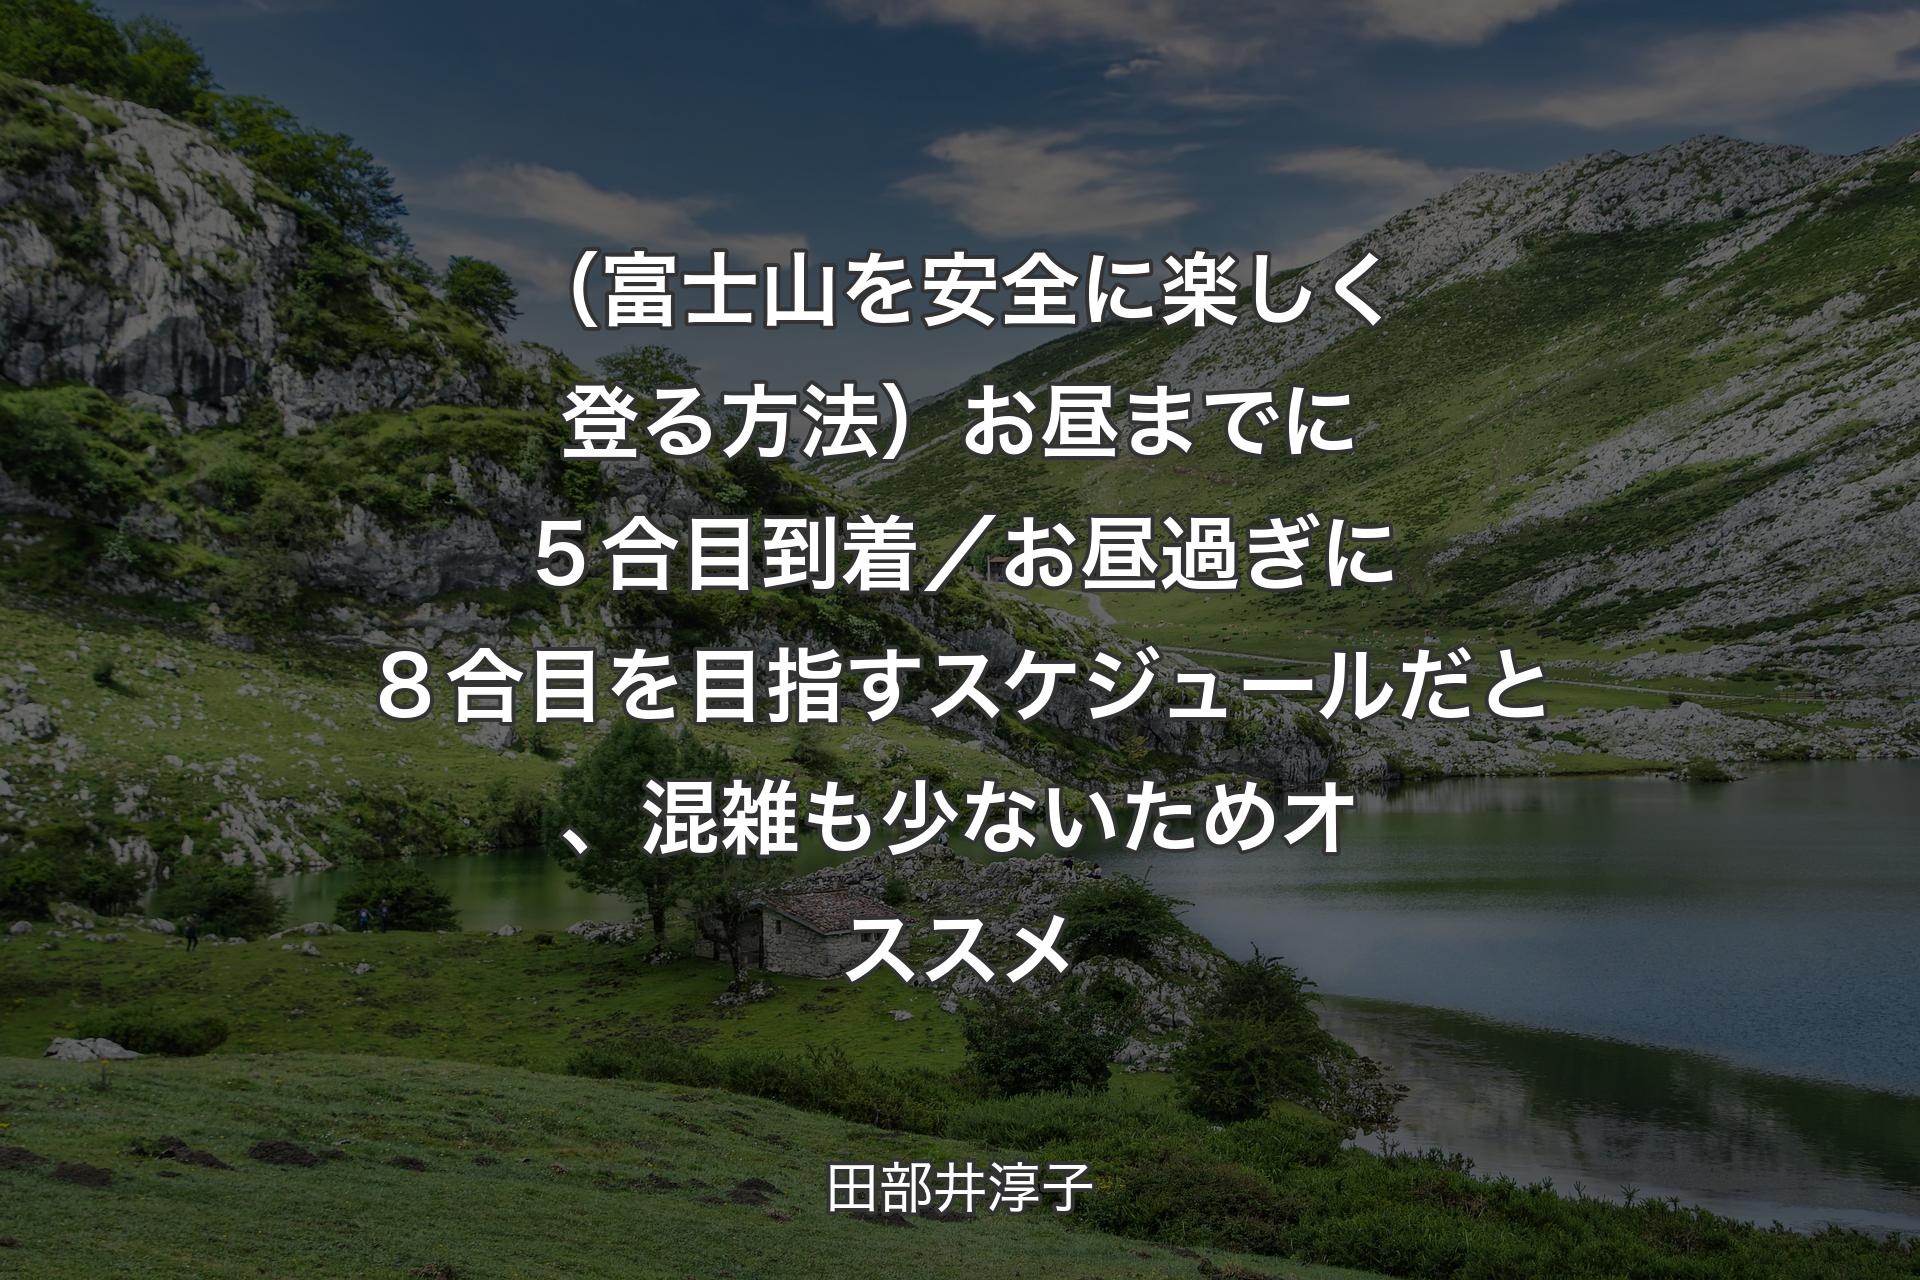 【背景1】（富士山を安全に楽しく登る方法）お昼までに５合目到着／お昼過ぎに８合目を目指すスケジュールだと、混雑も少ないためオススメ - 田部井淳子